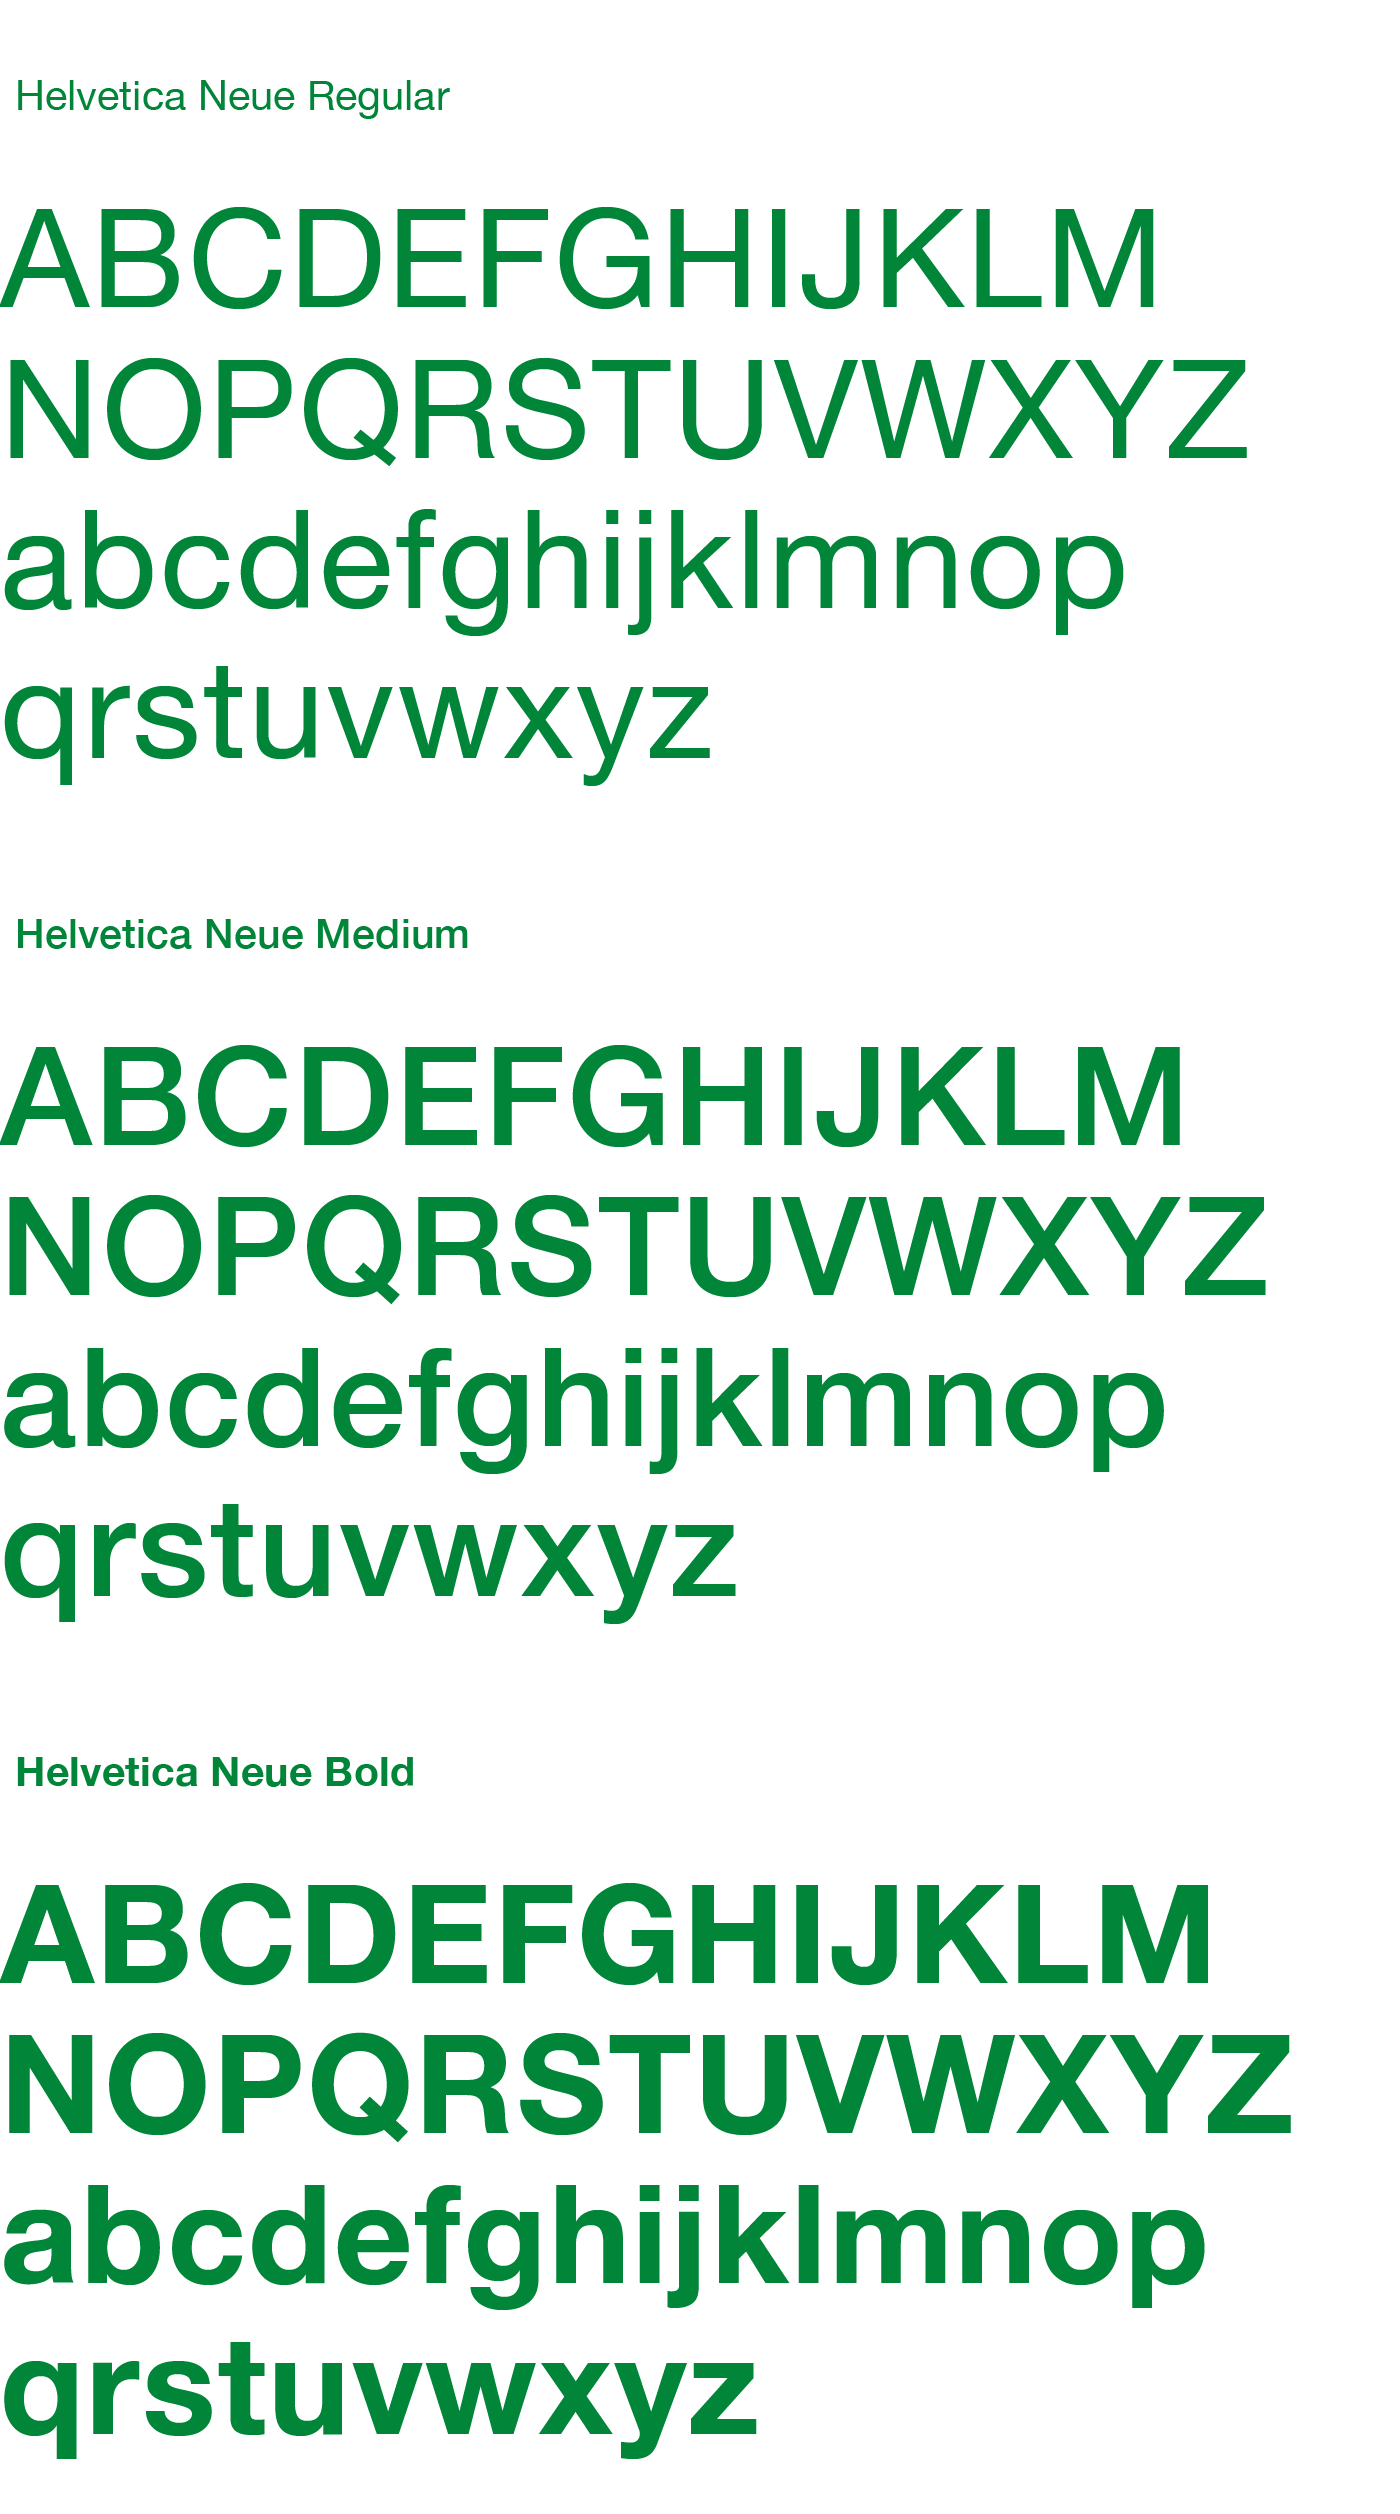 Família tipogràfica Helvetica Neue.